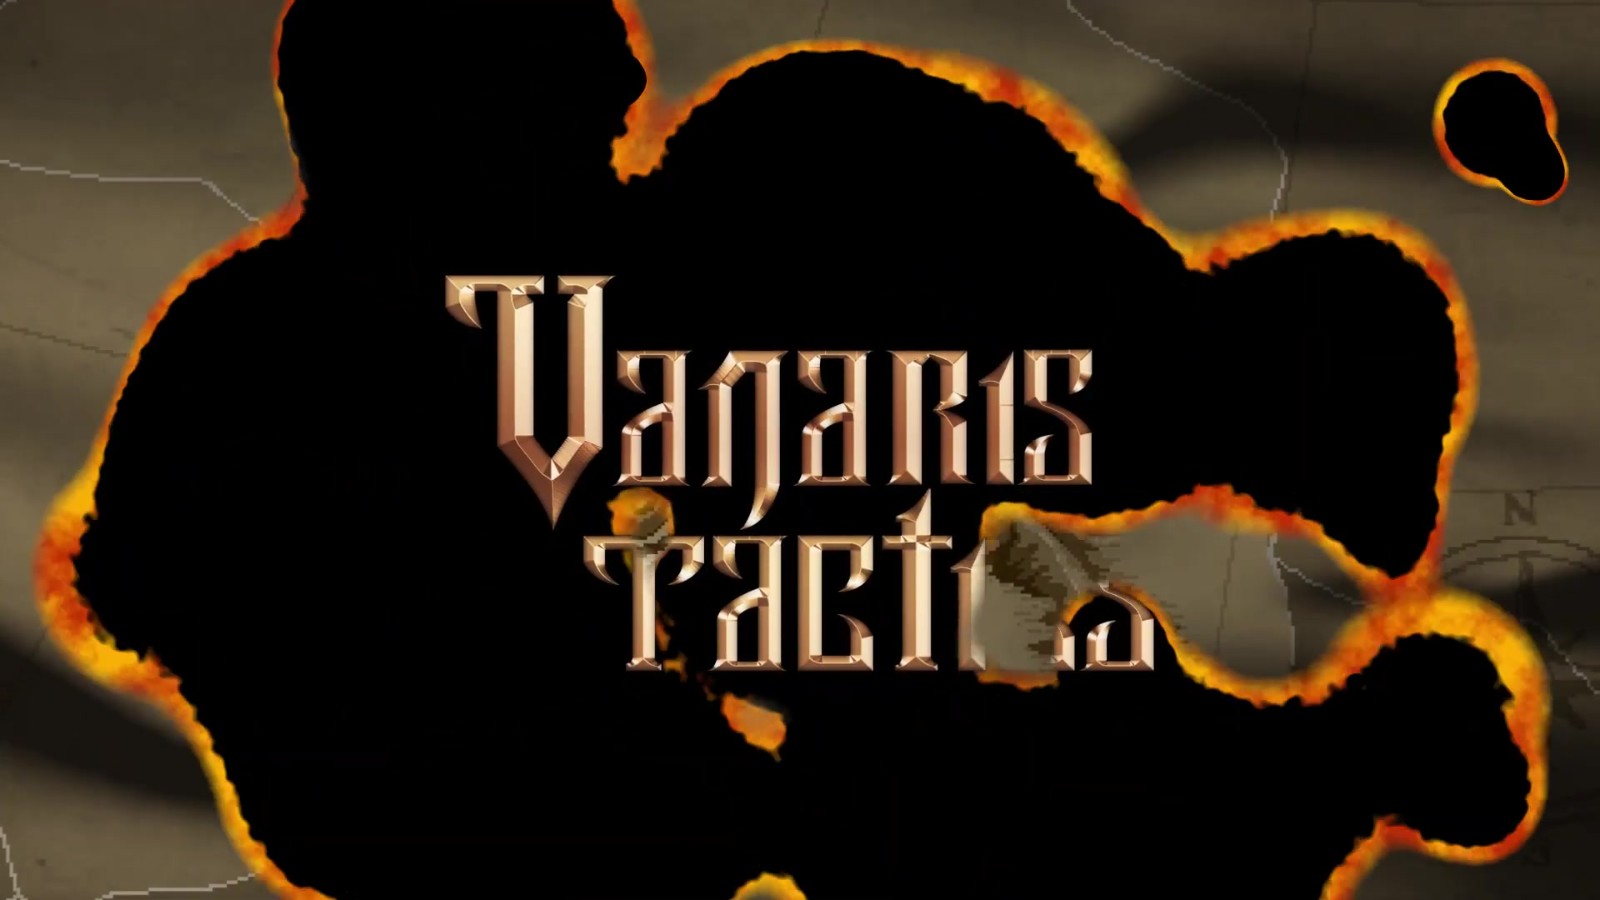 回合制策略游戏《瓦纳利斯：战术》8月4日发行